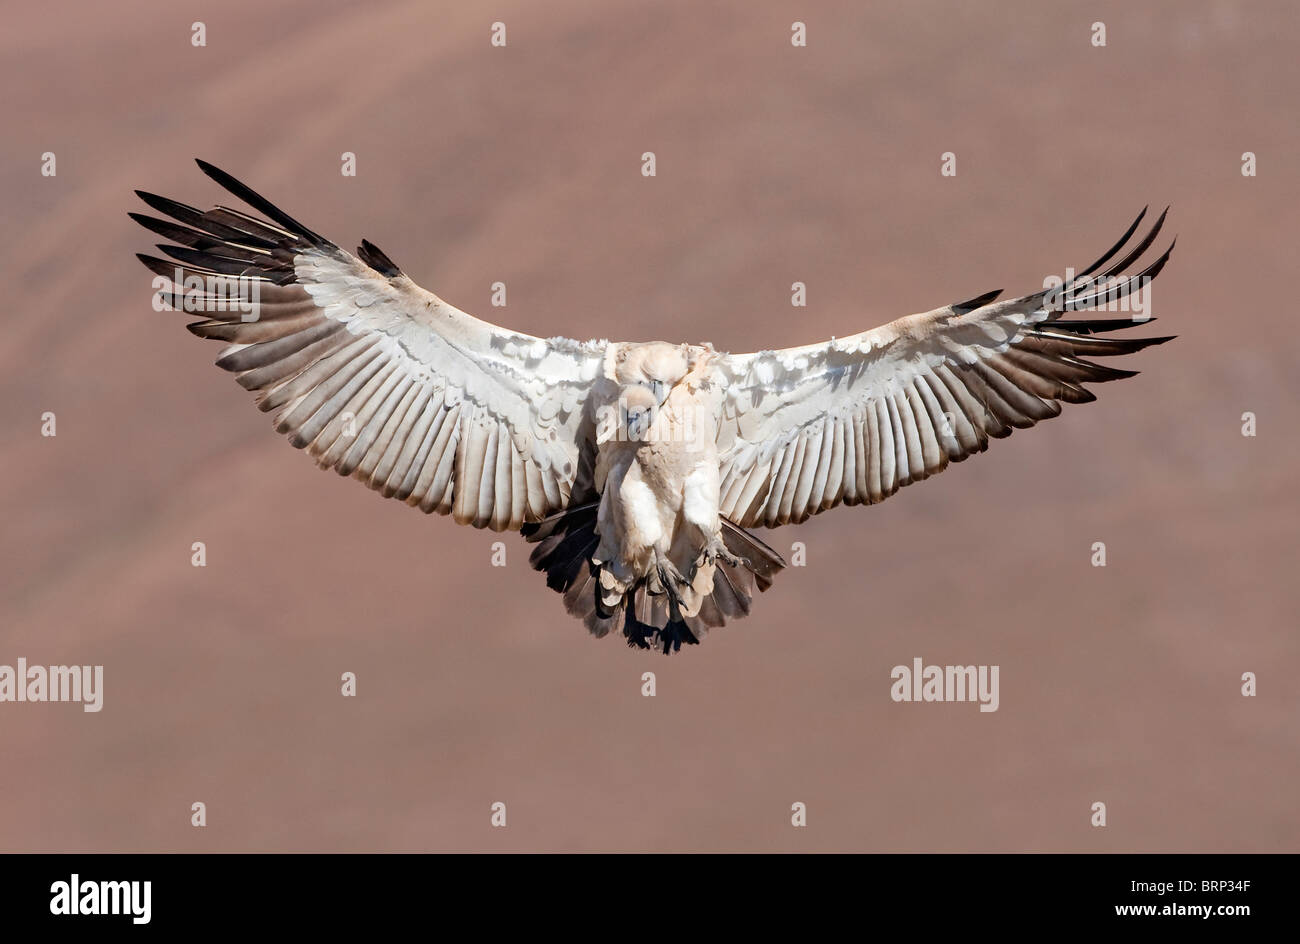 Cape Vulture in flight Stock Photo